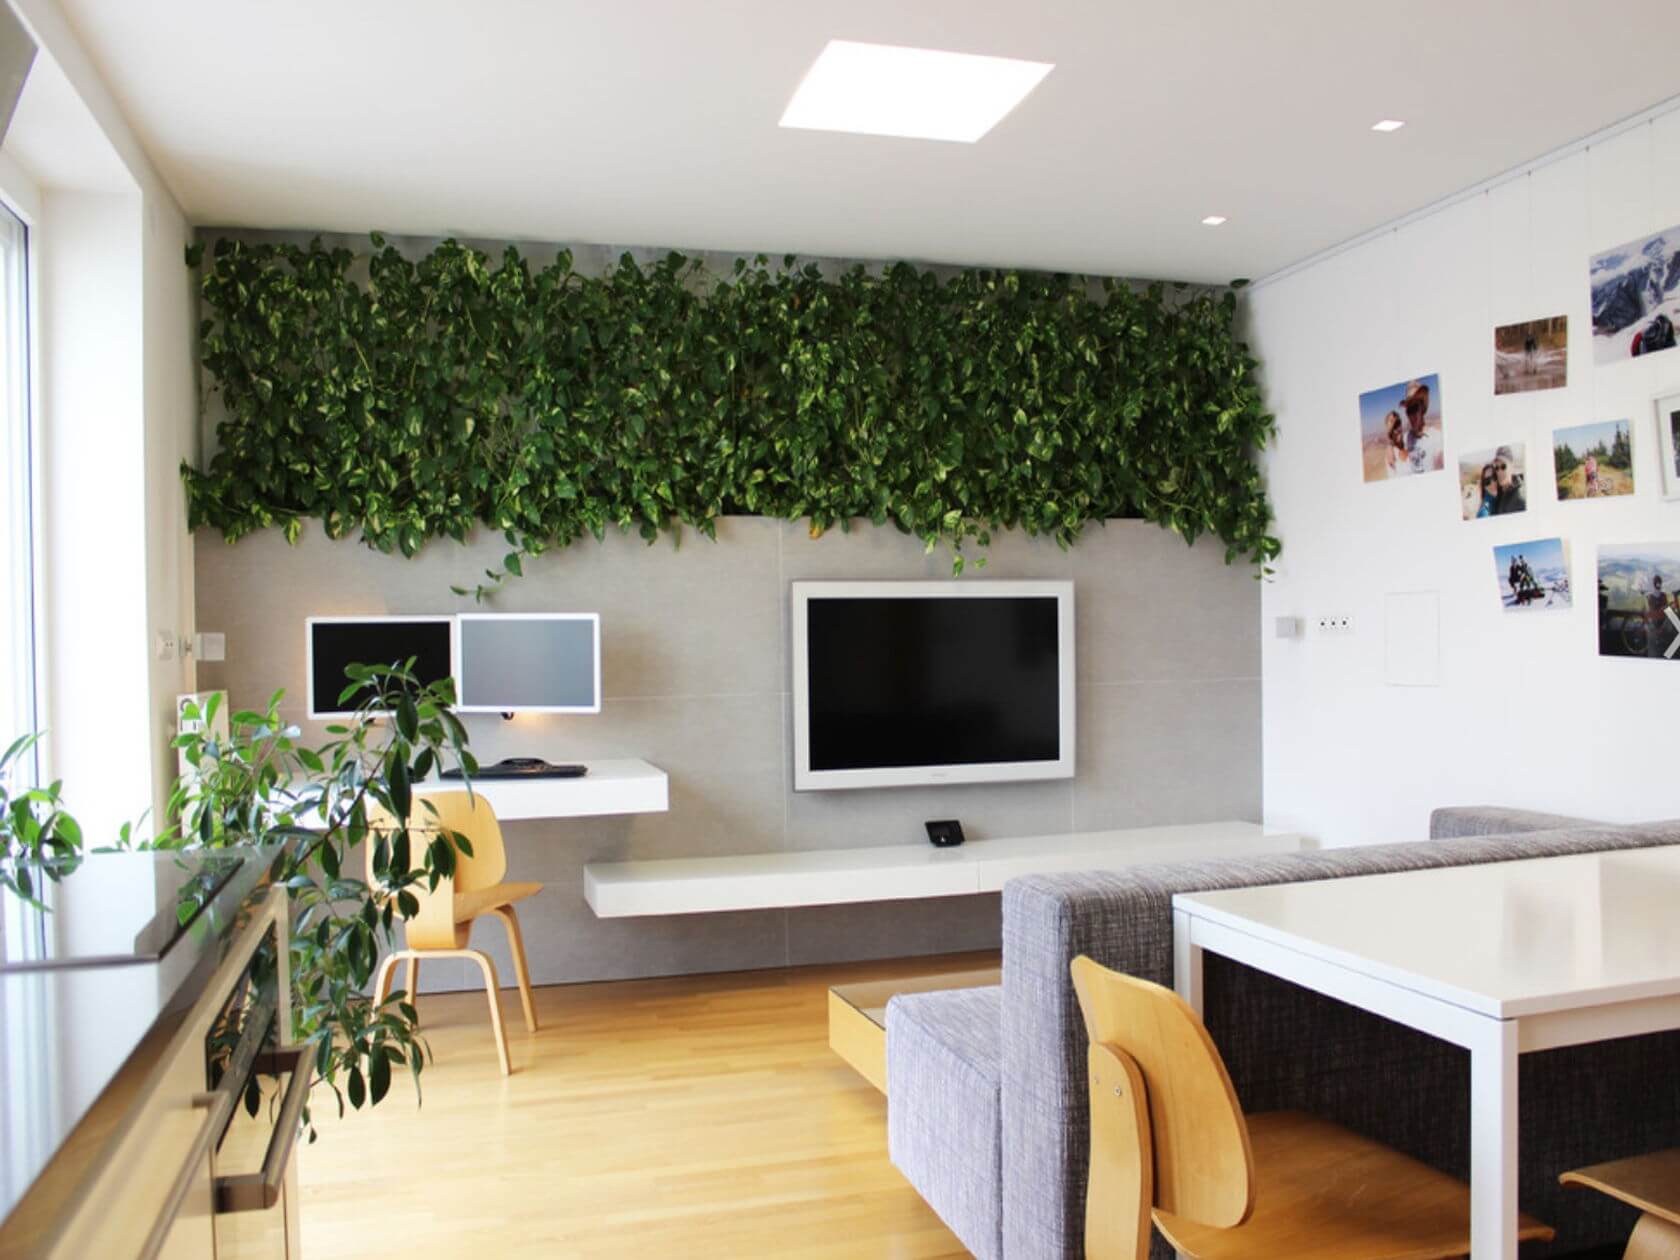 Office Interior Plant Design